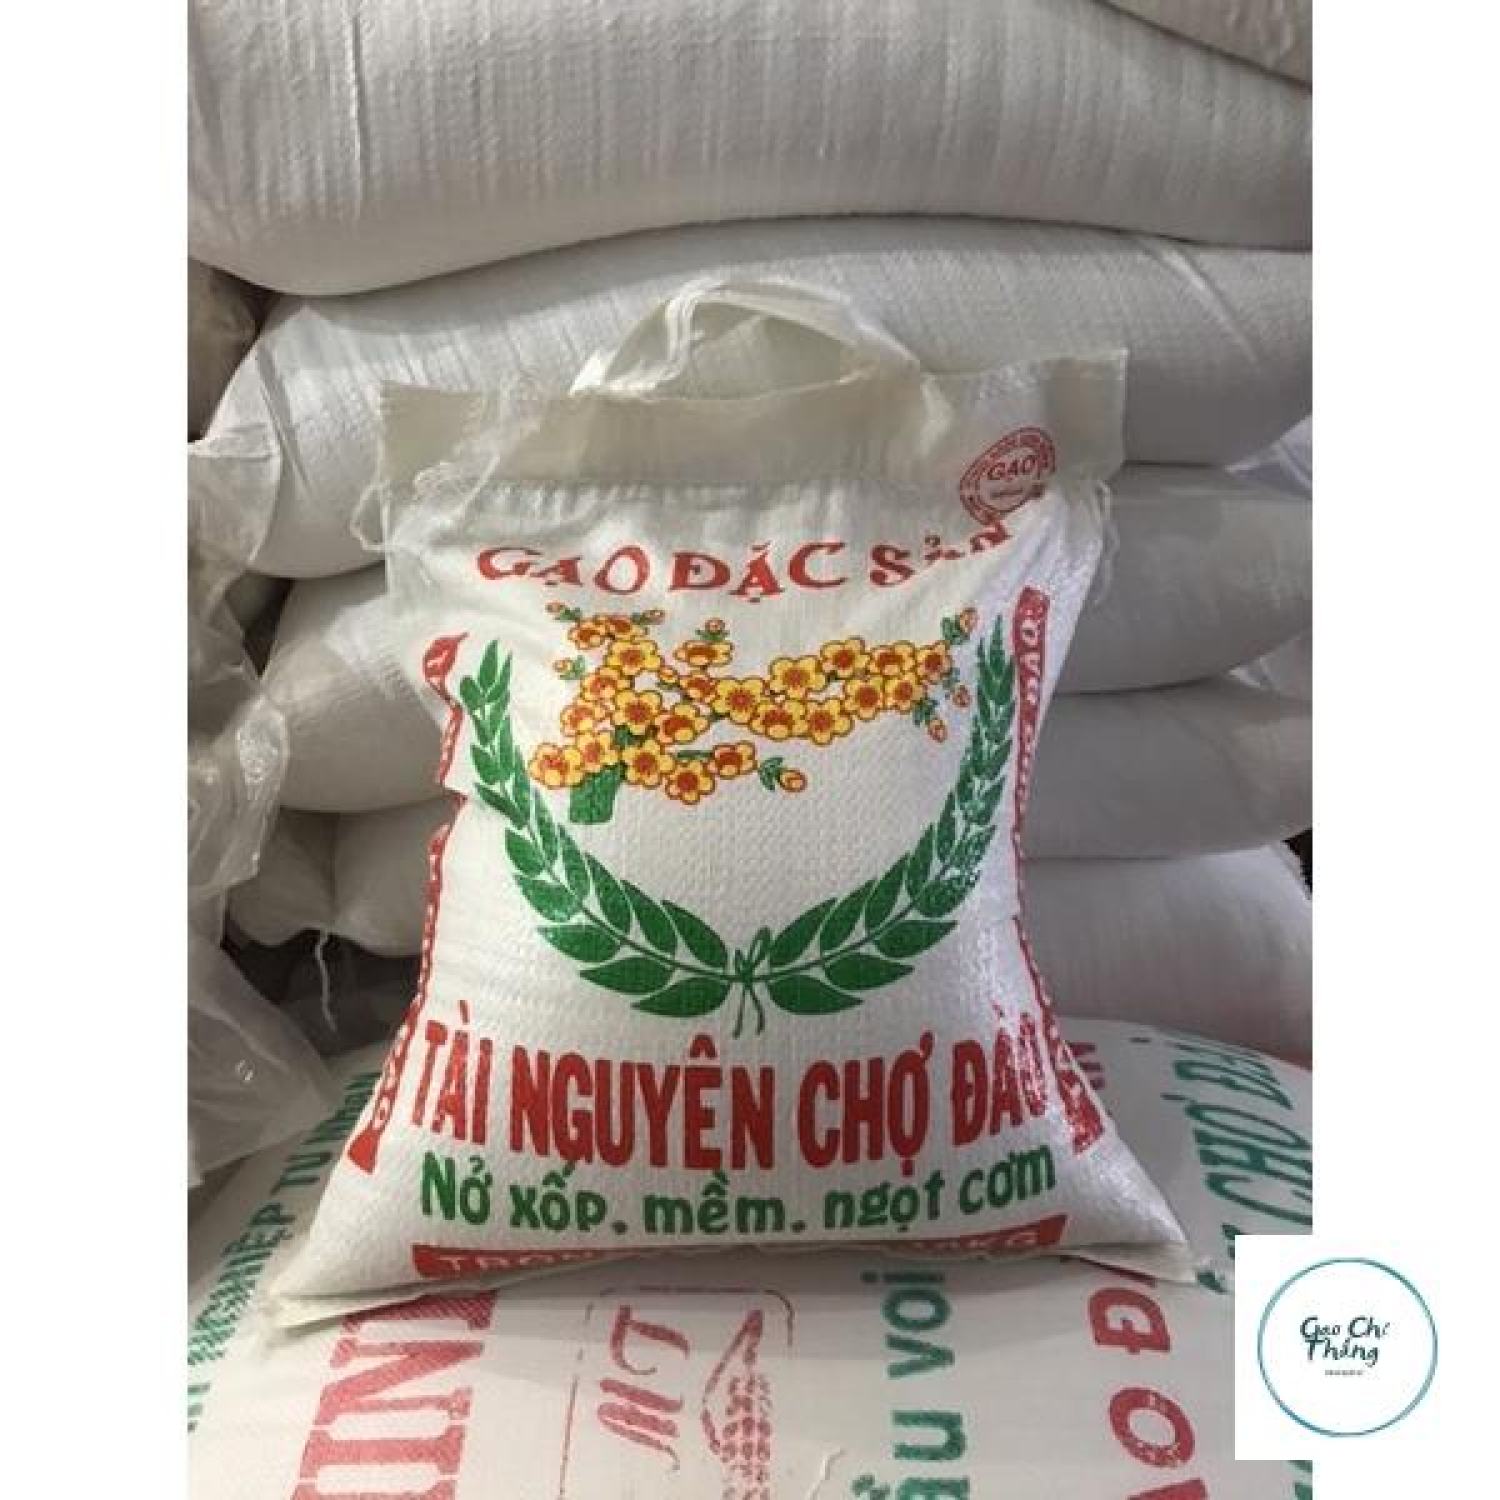 10kg gạo ài nguyên chợ đào Nở xốp mềm ngọt cơm